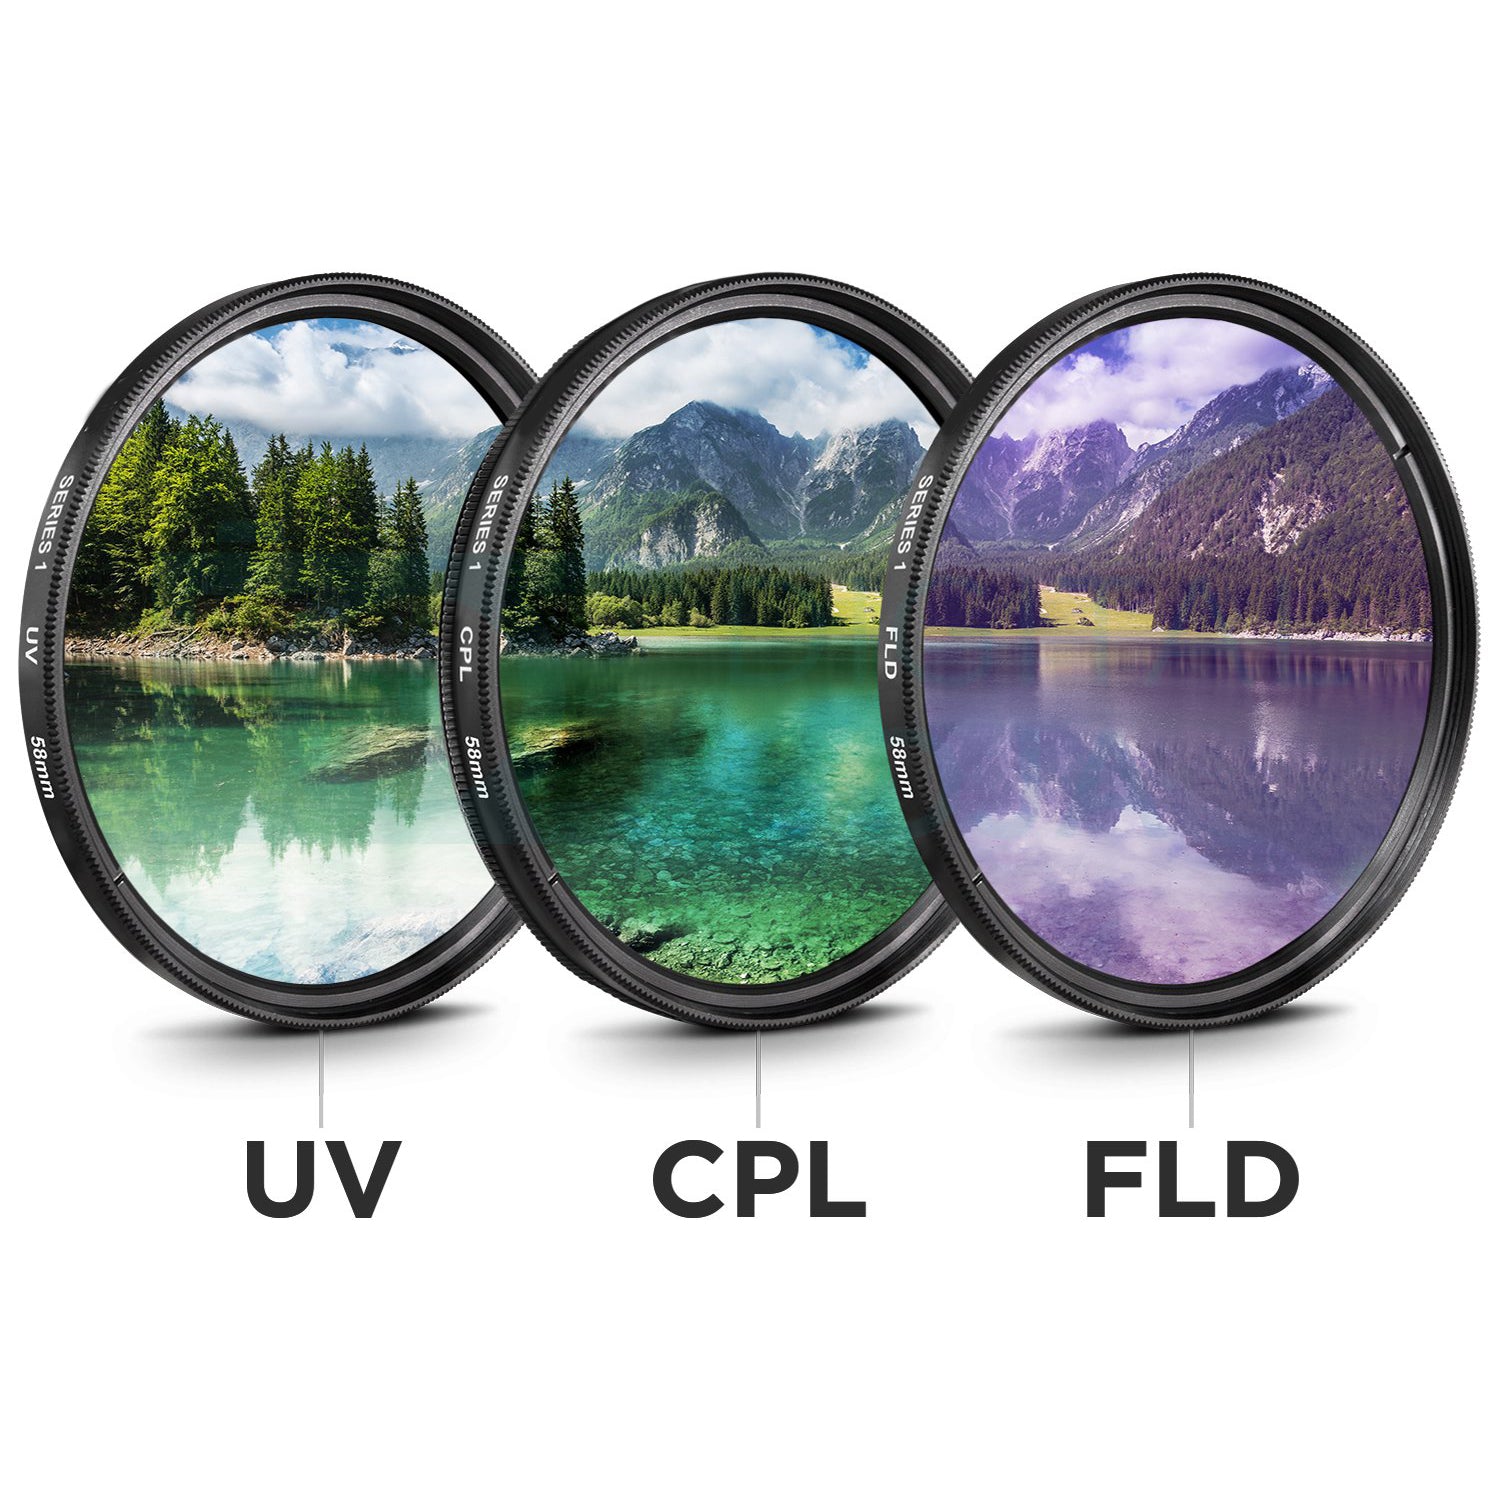 Canon EF 16-35mm f/2.8L III USM Lens (0573C002) Includes: DSLR Sling Backpack, 9PC Filter Kit, Sandisk 32GB SD + More